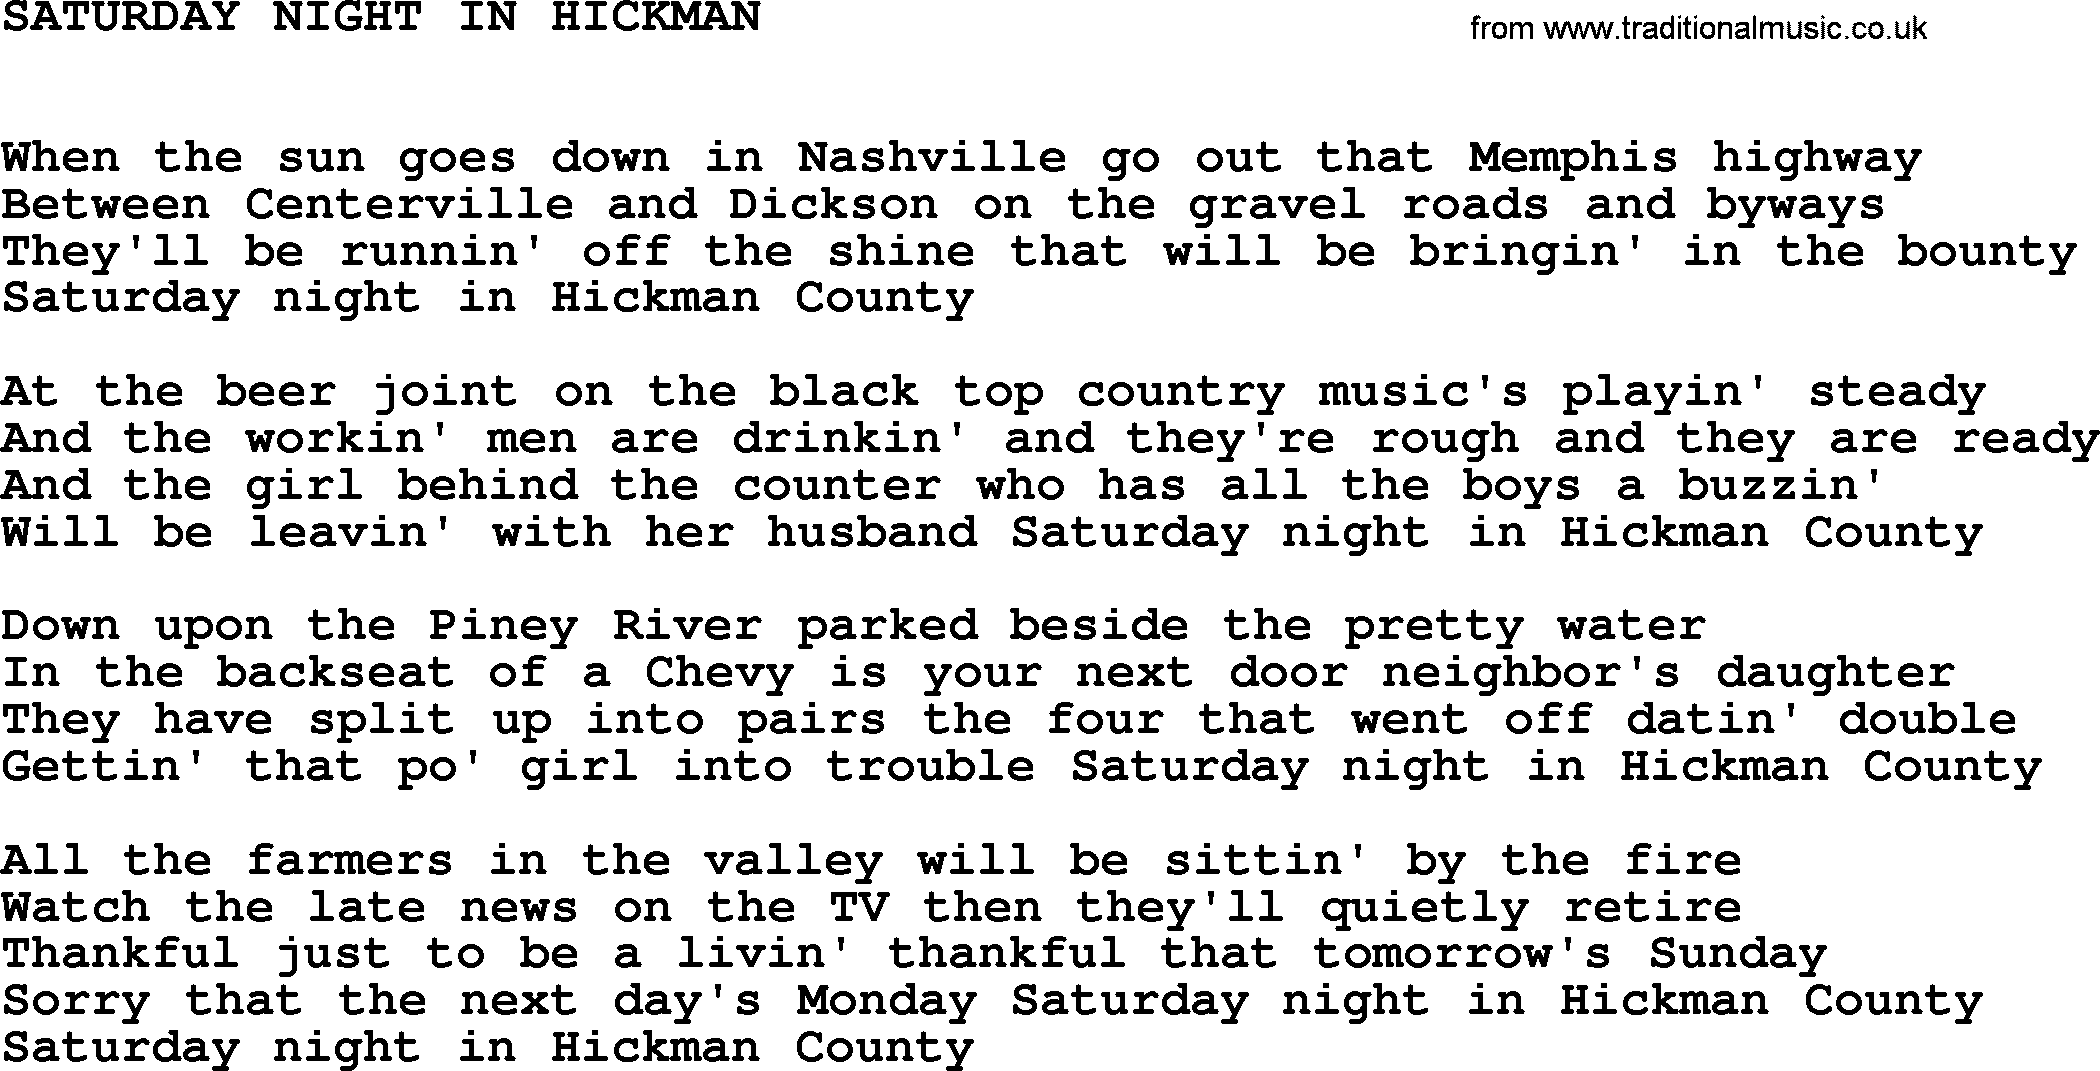 Johnny Cash song Saturday Night In Hickman.txt lyrics